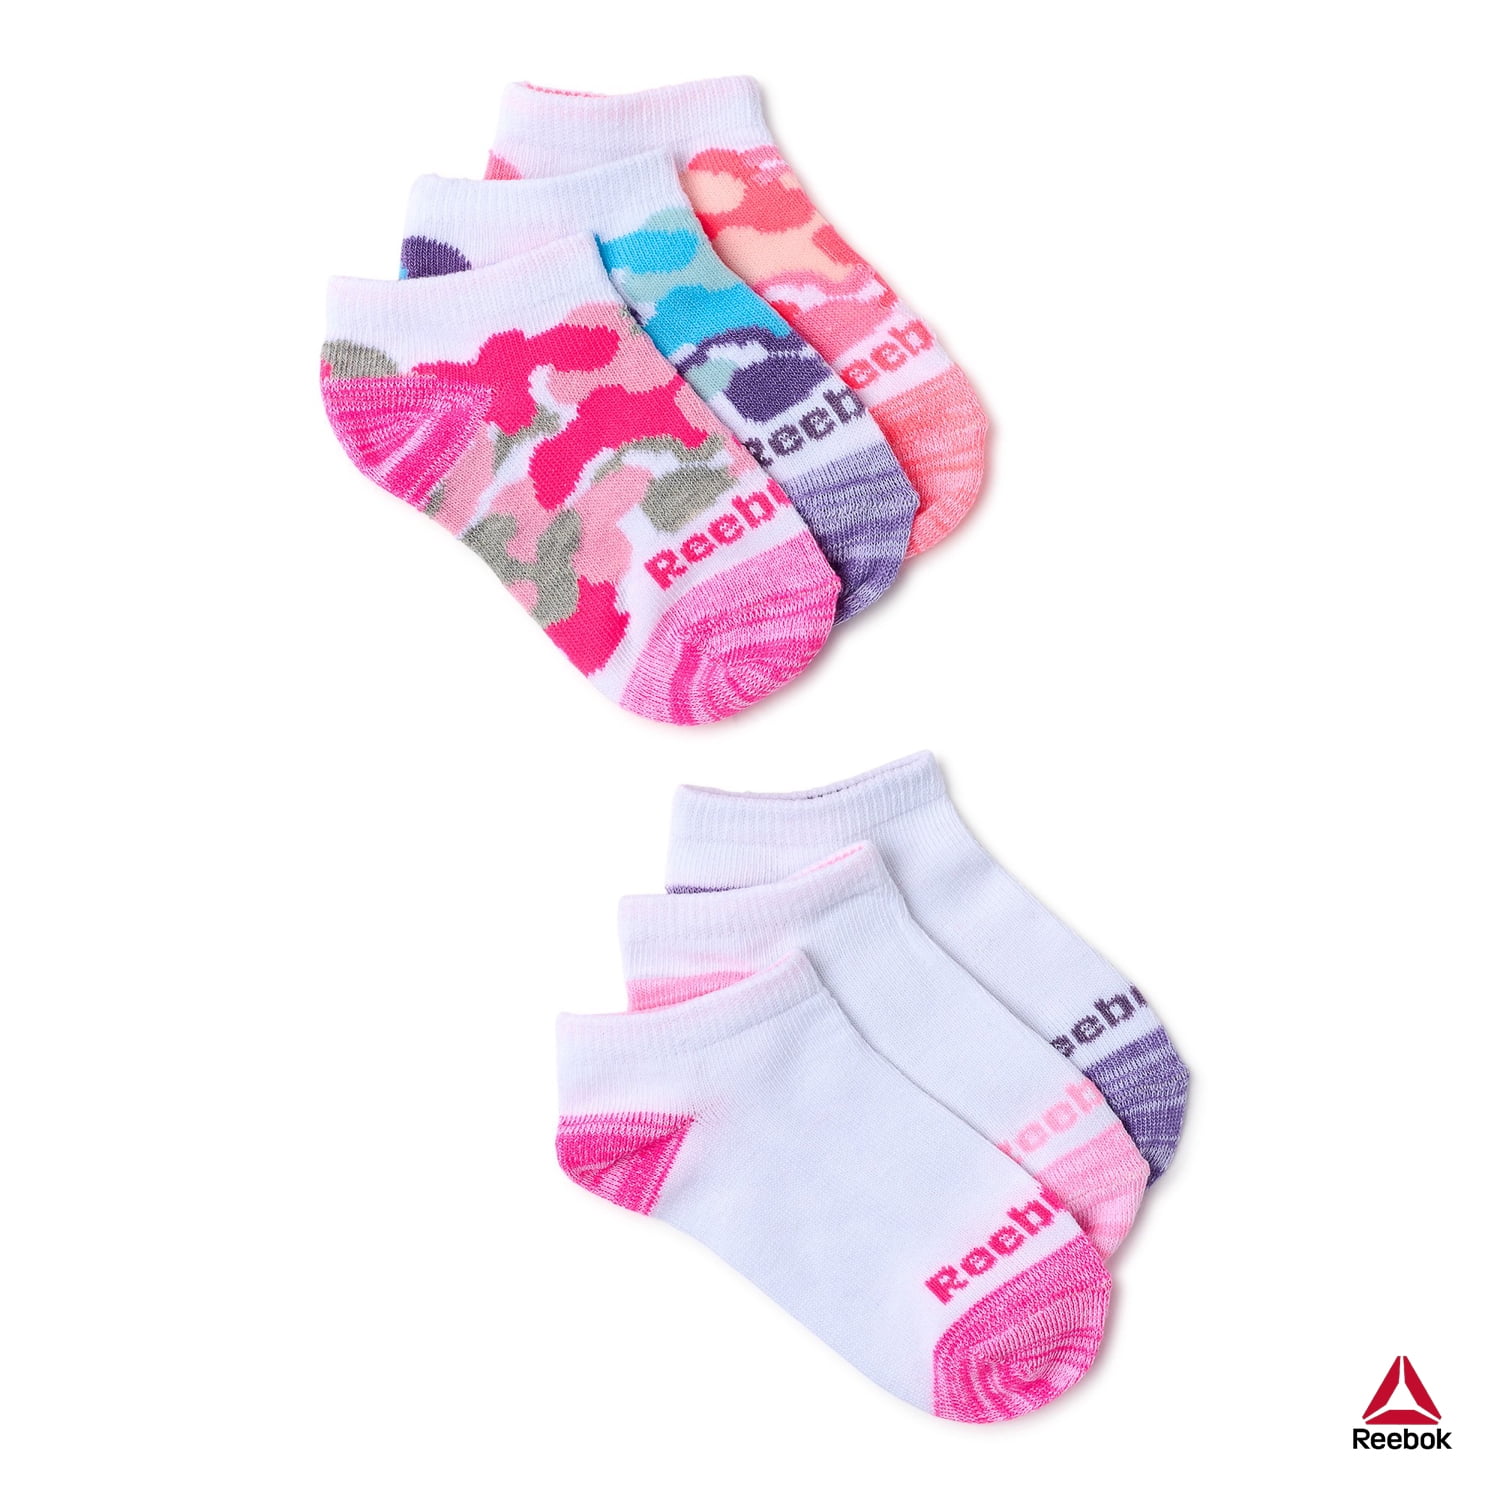 Shop Reebok Girls Pro-Series Lightweight Low Cut Socks, 6-Pack - Great ...